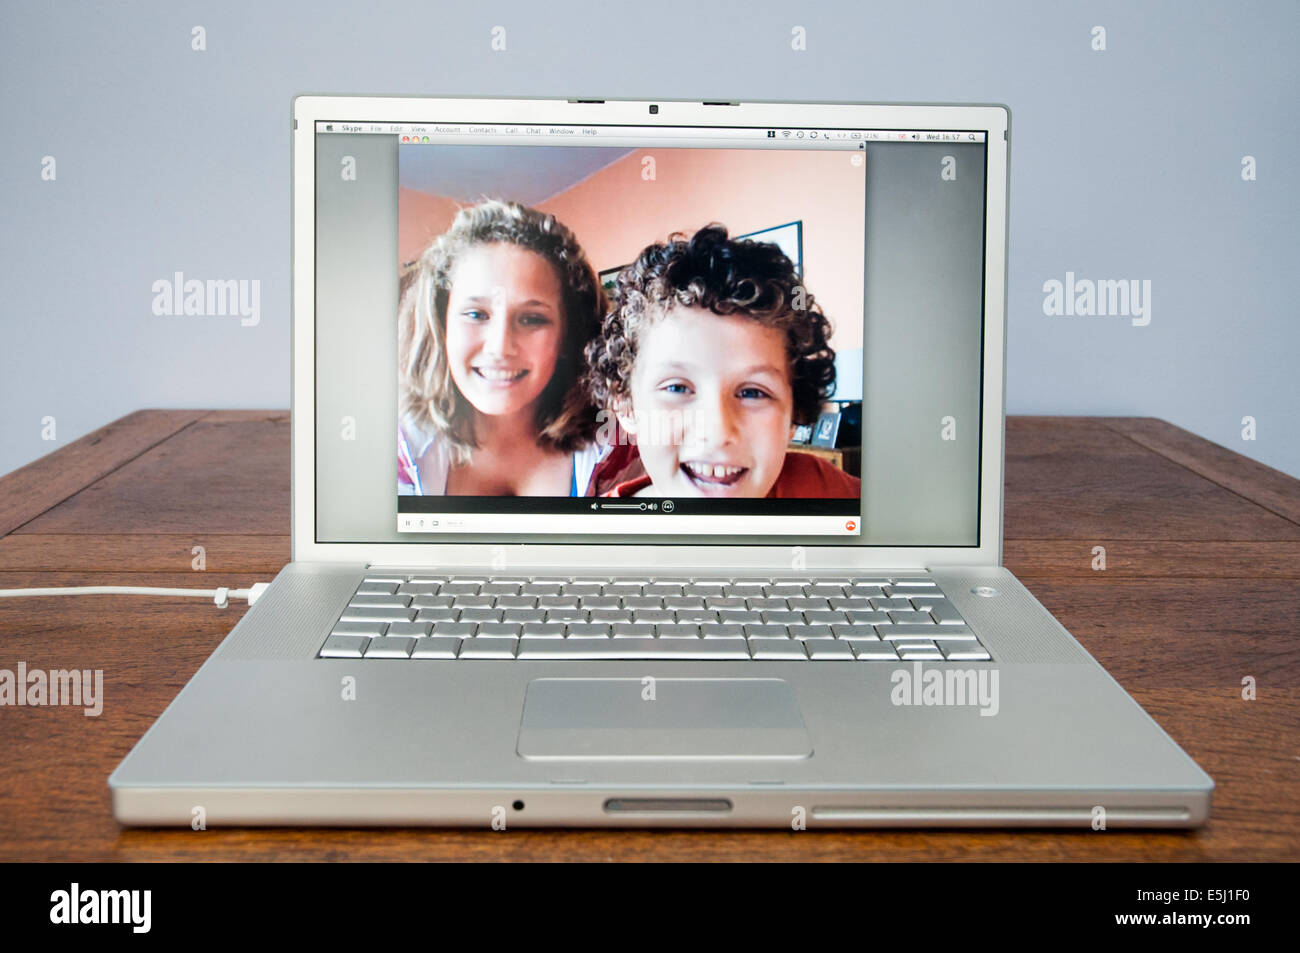 Children talking on Skype on Apple laptop computer, England, UK Stock Photo